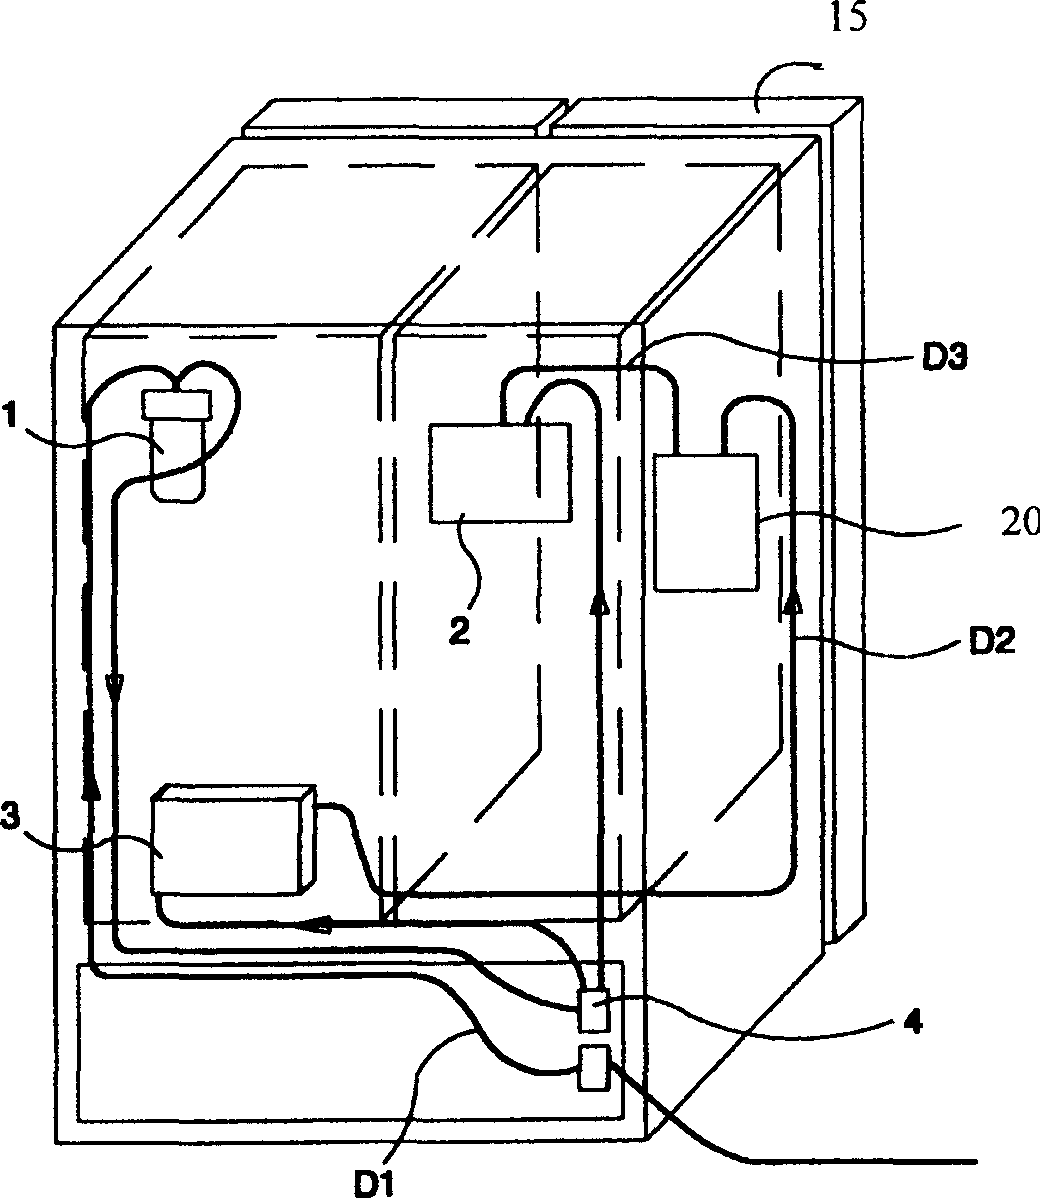 Refrigerator door structure